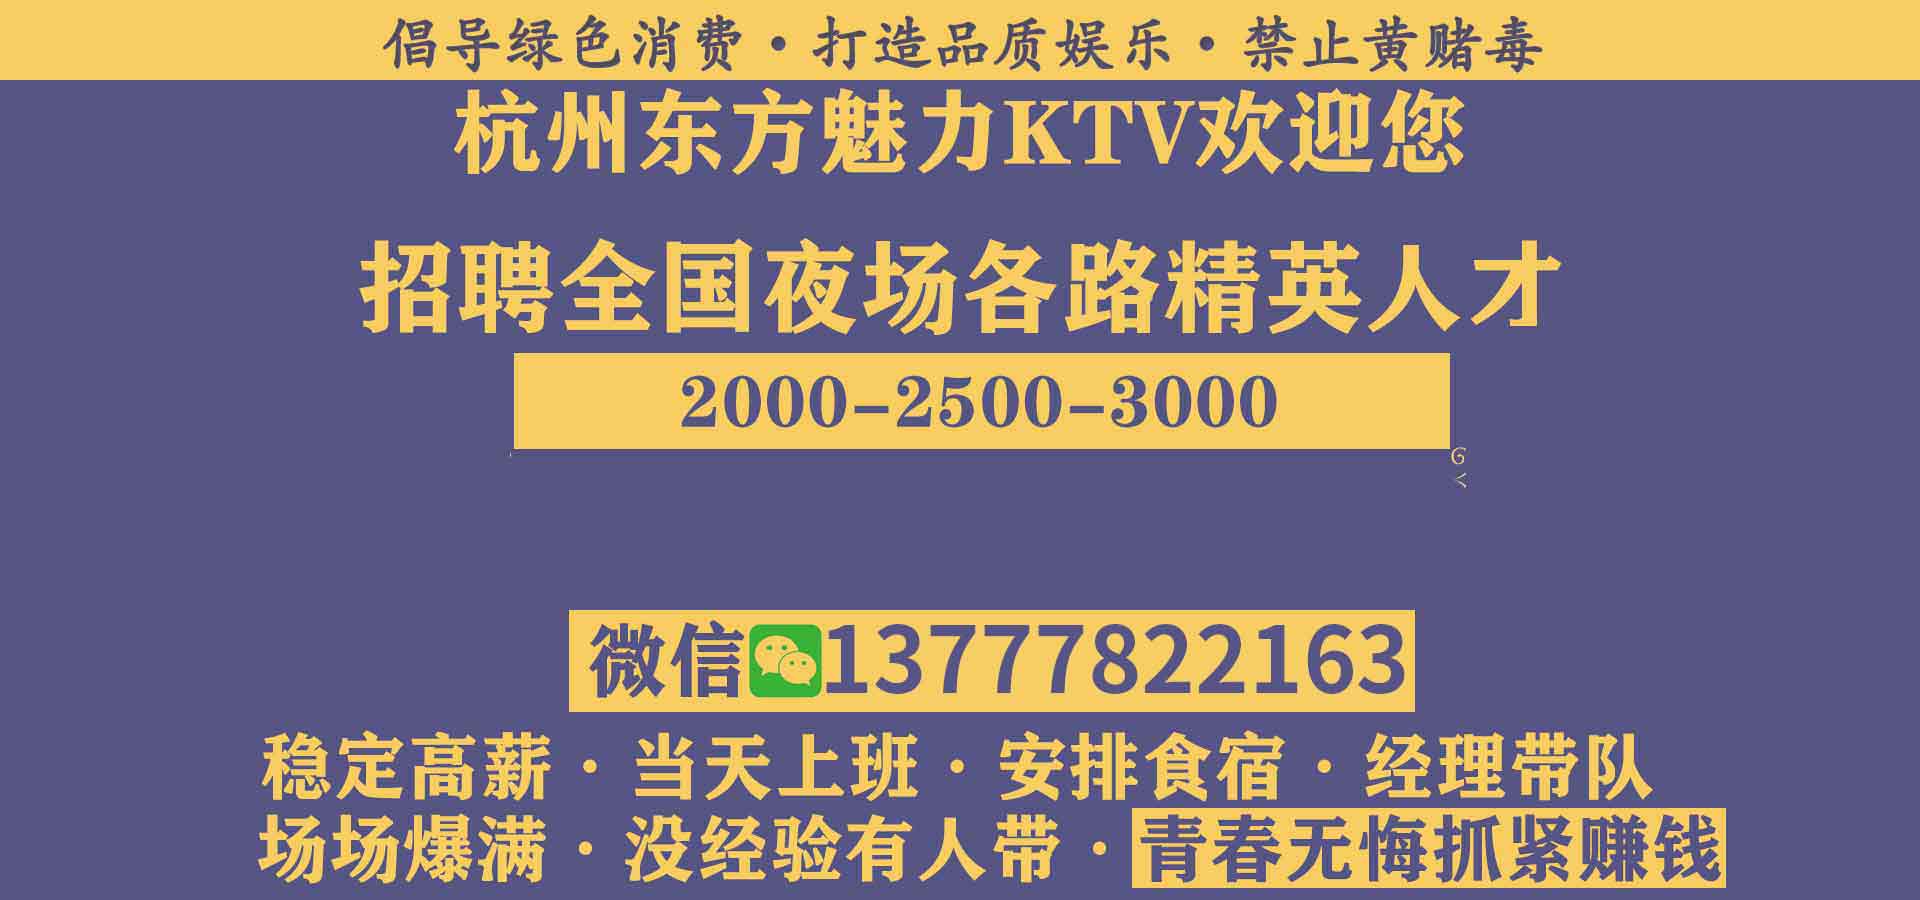 杭州皇家公馆KTV夜场招聘小费天天拿,应聘要求是什么